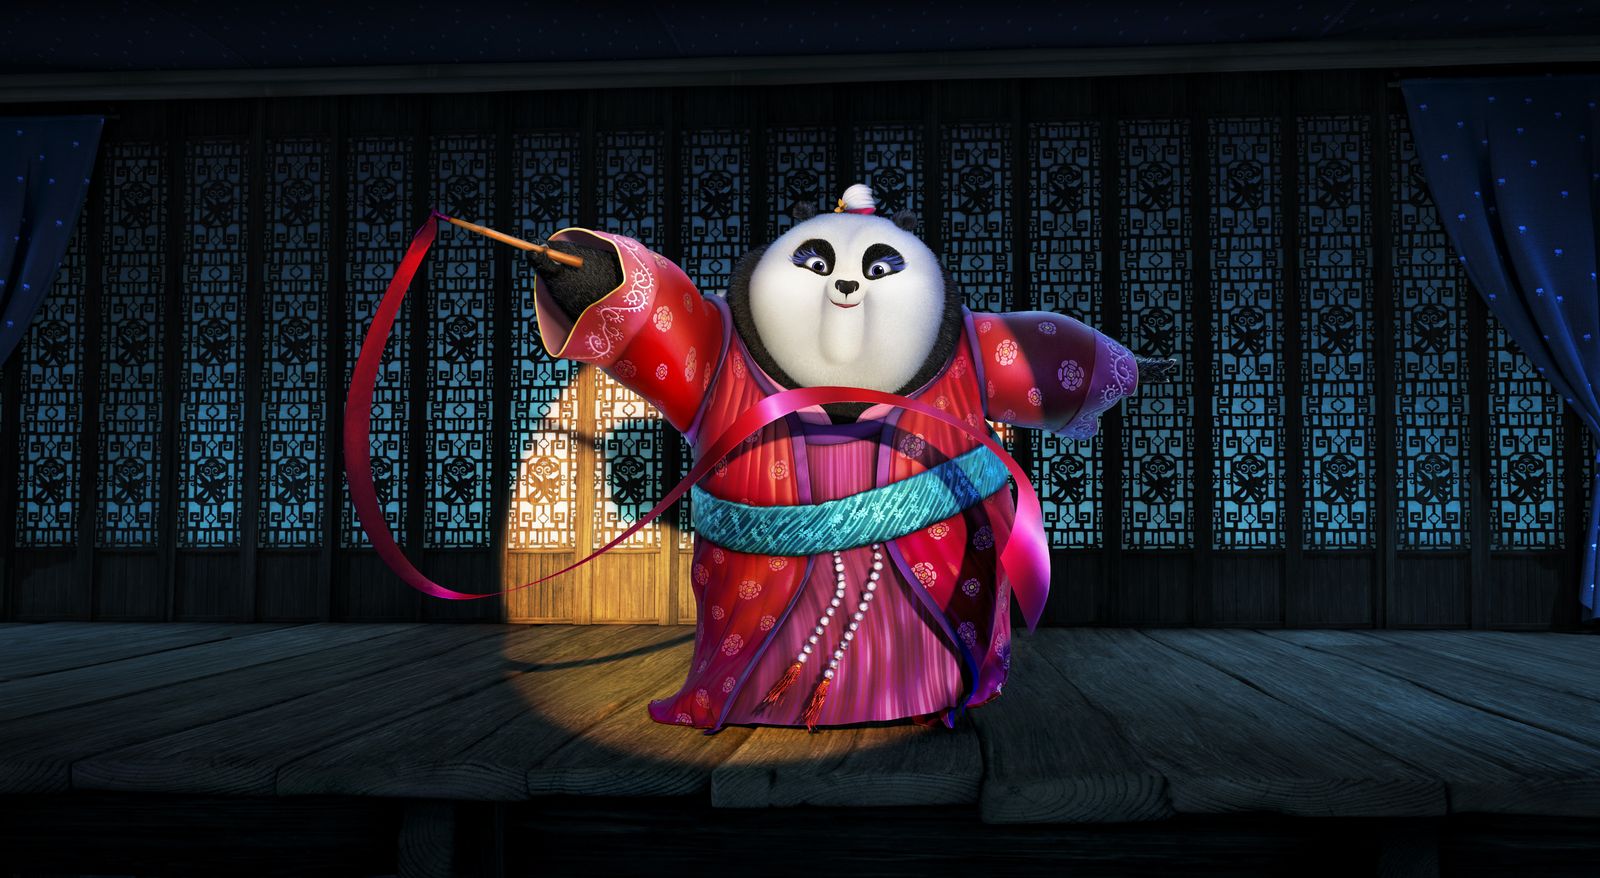 Kung Fu Panda 3 (2016) - fotografie